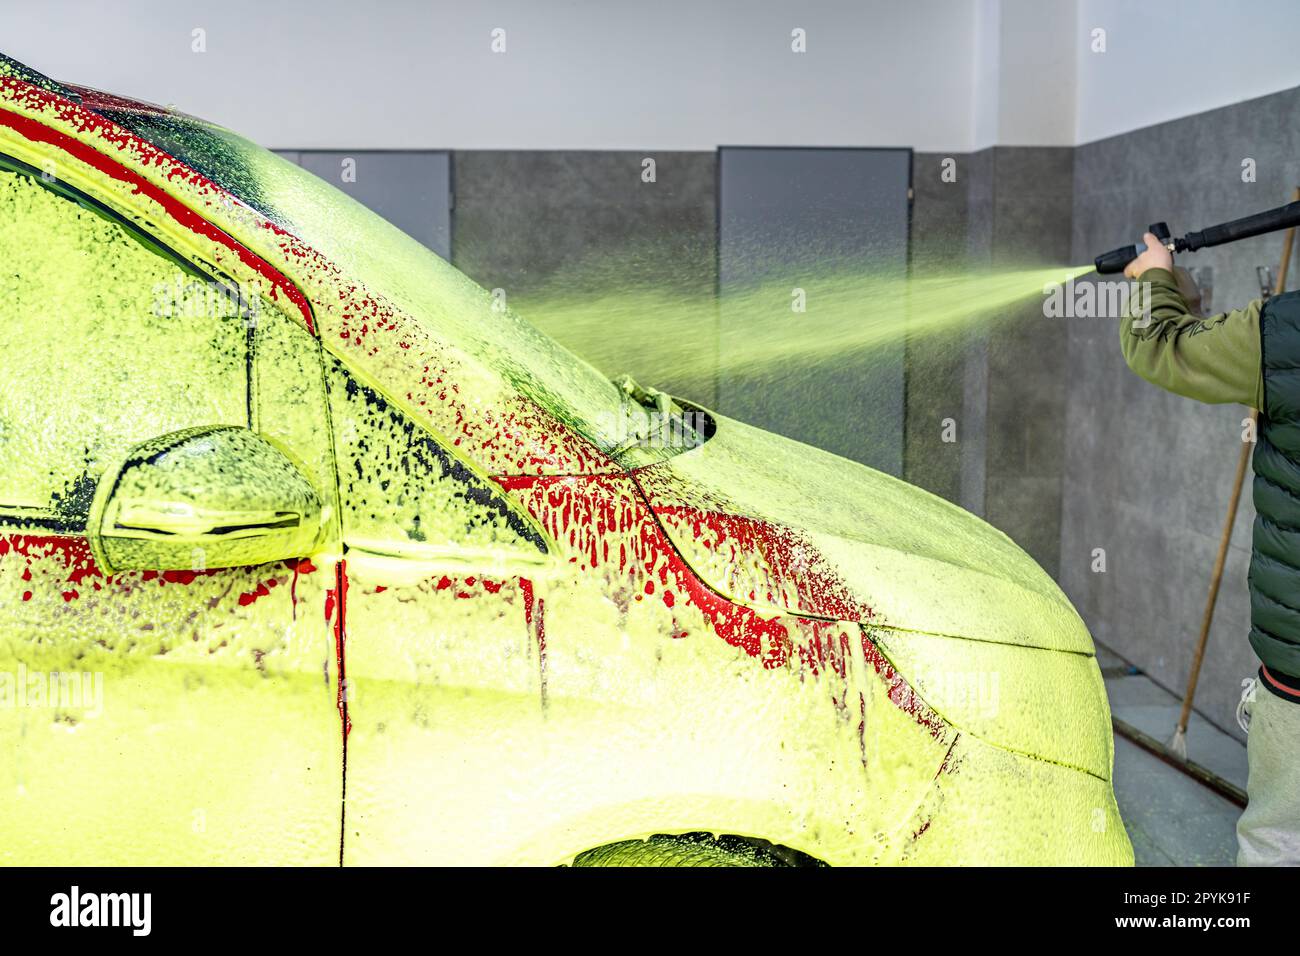 Besprühen von Autos mit grünem Schaum, chemische Reinigung und Waschen von Autos in der Garage Stockfoto